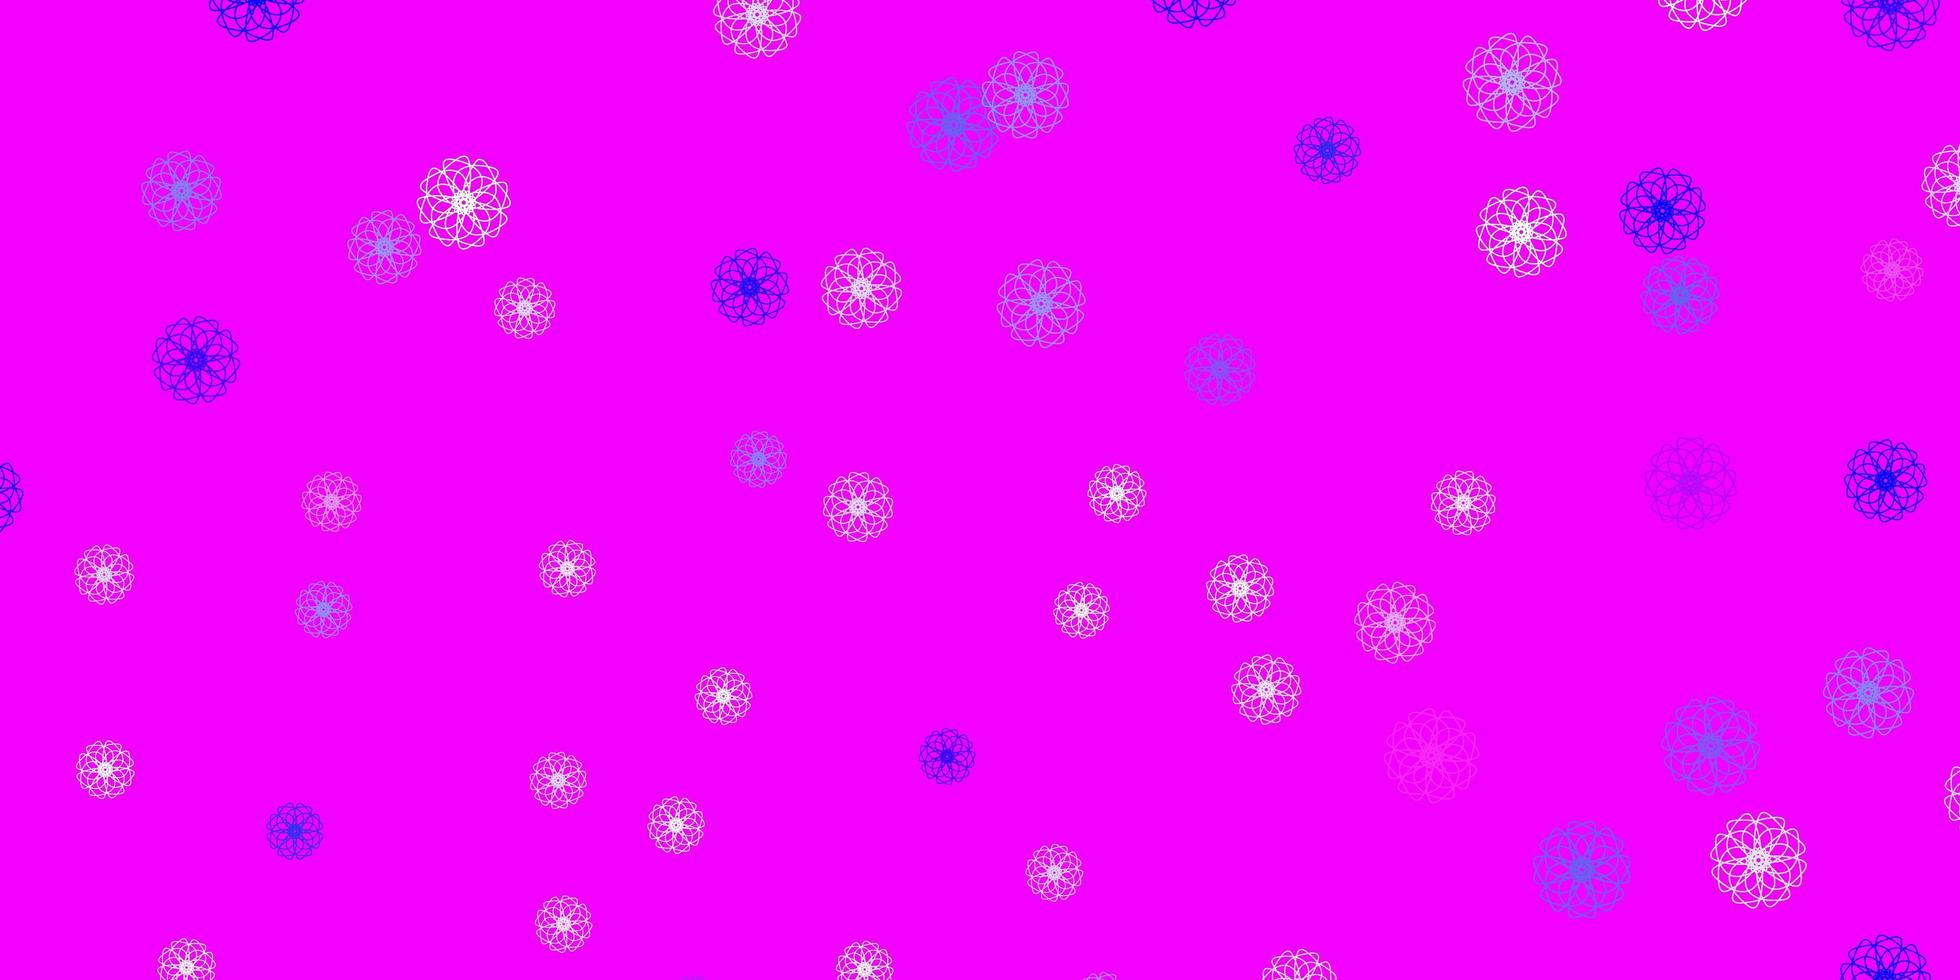 layout natural do vetor rosa claro, azul com flores.